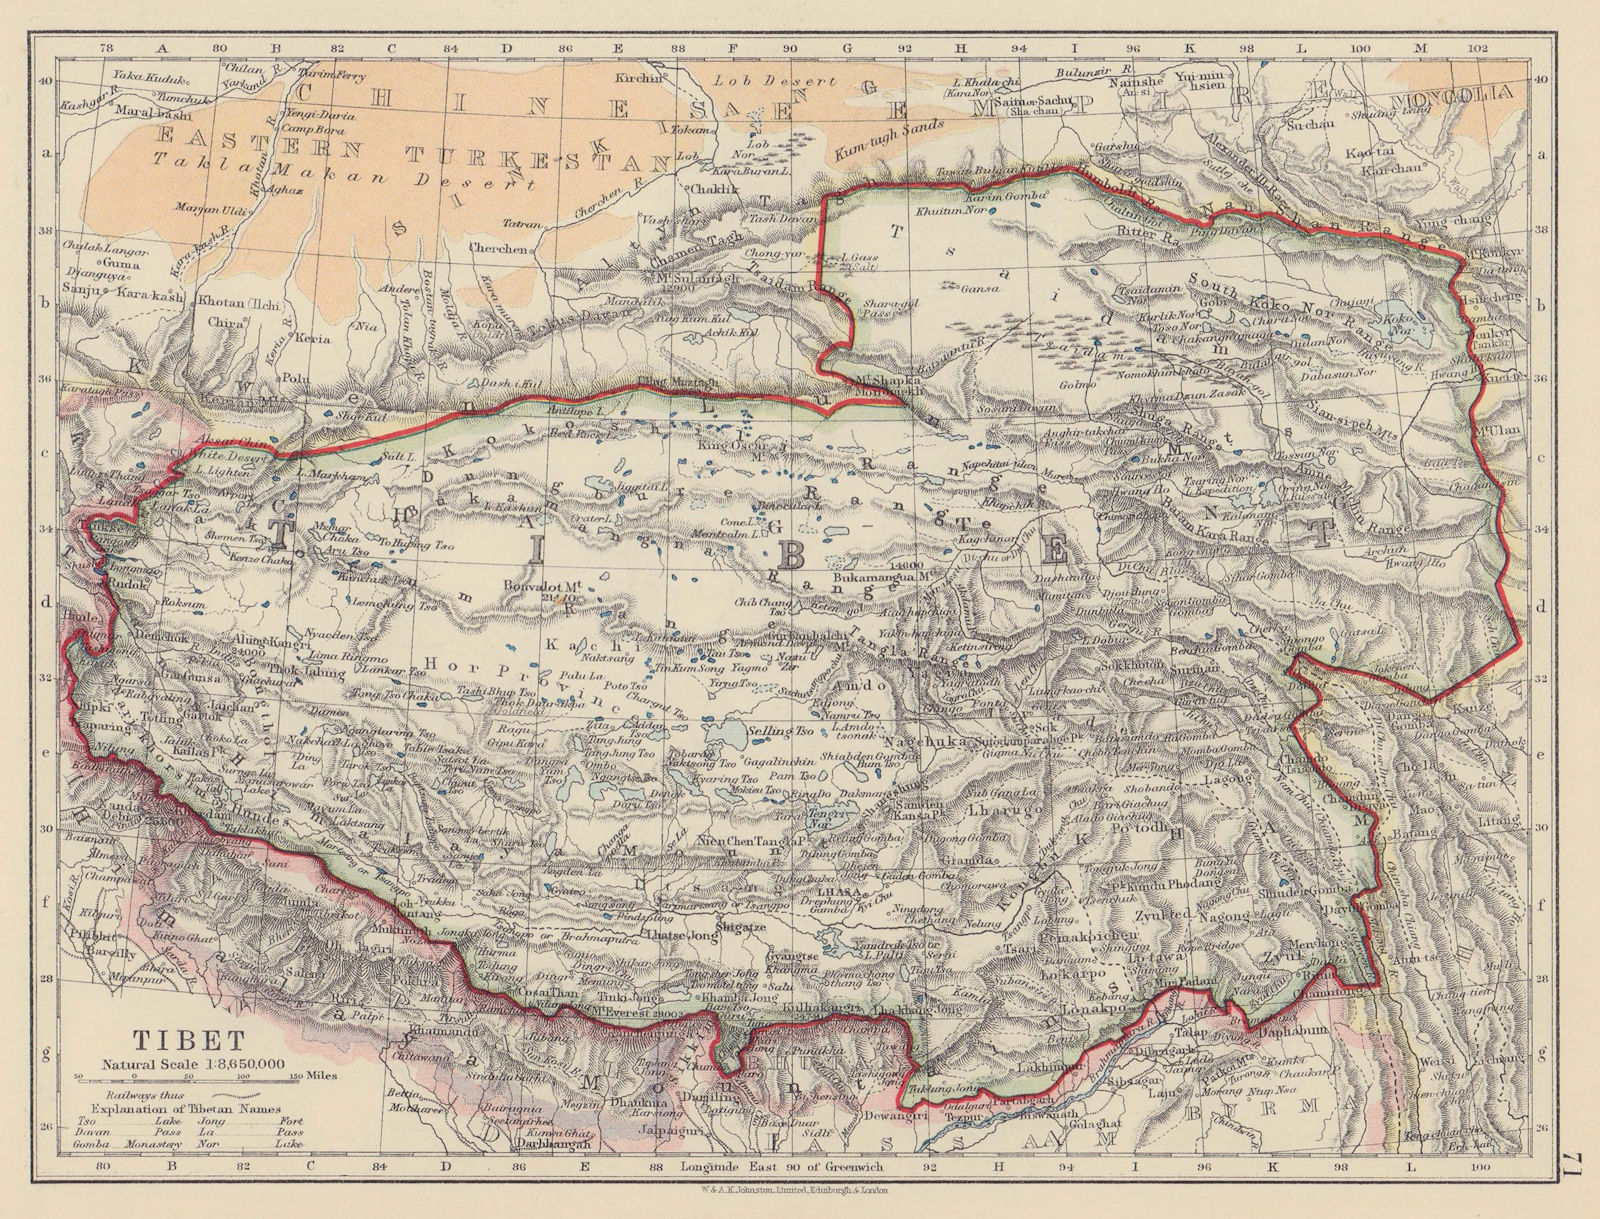 Associate Product TIBET. Lhasa Chang Tang Himalayas Taklamakan desert. JOHNSTON 1910 old map